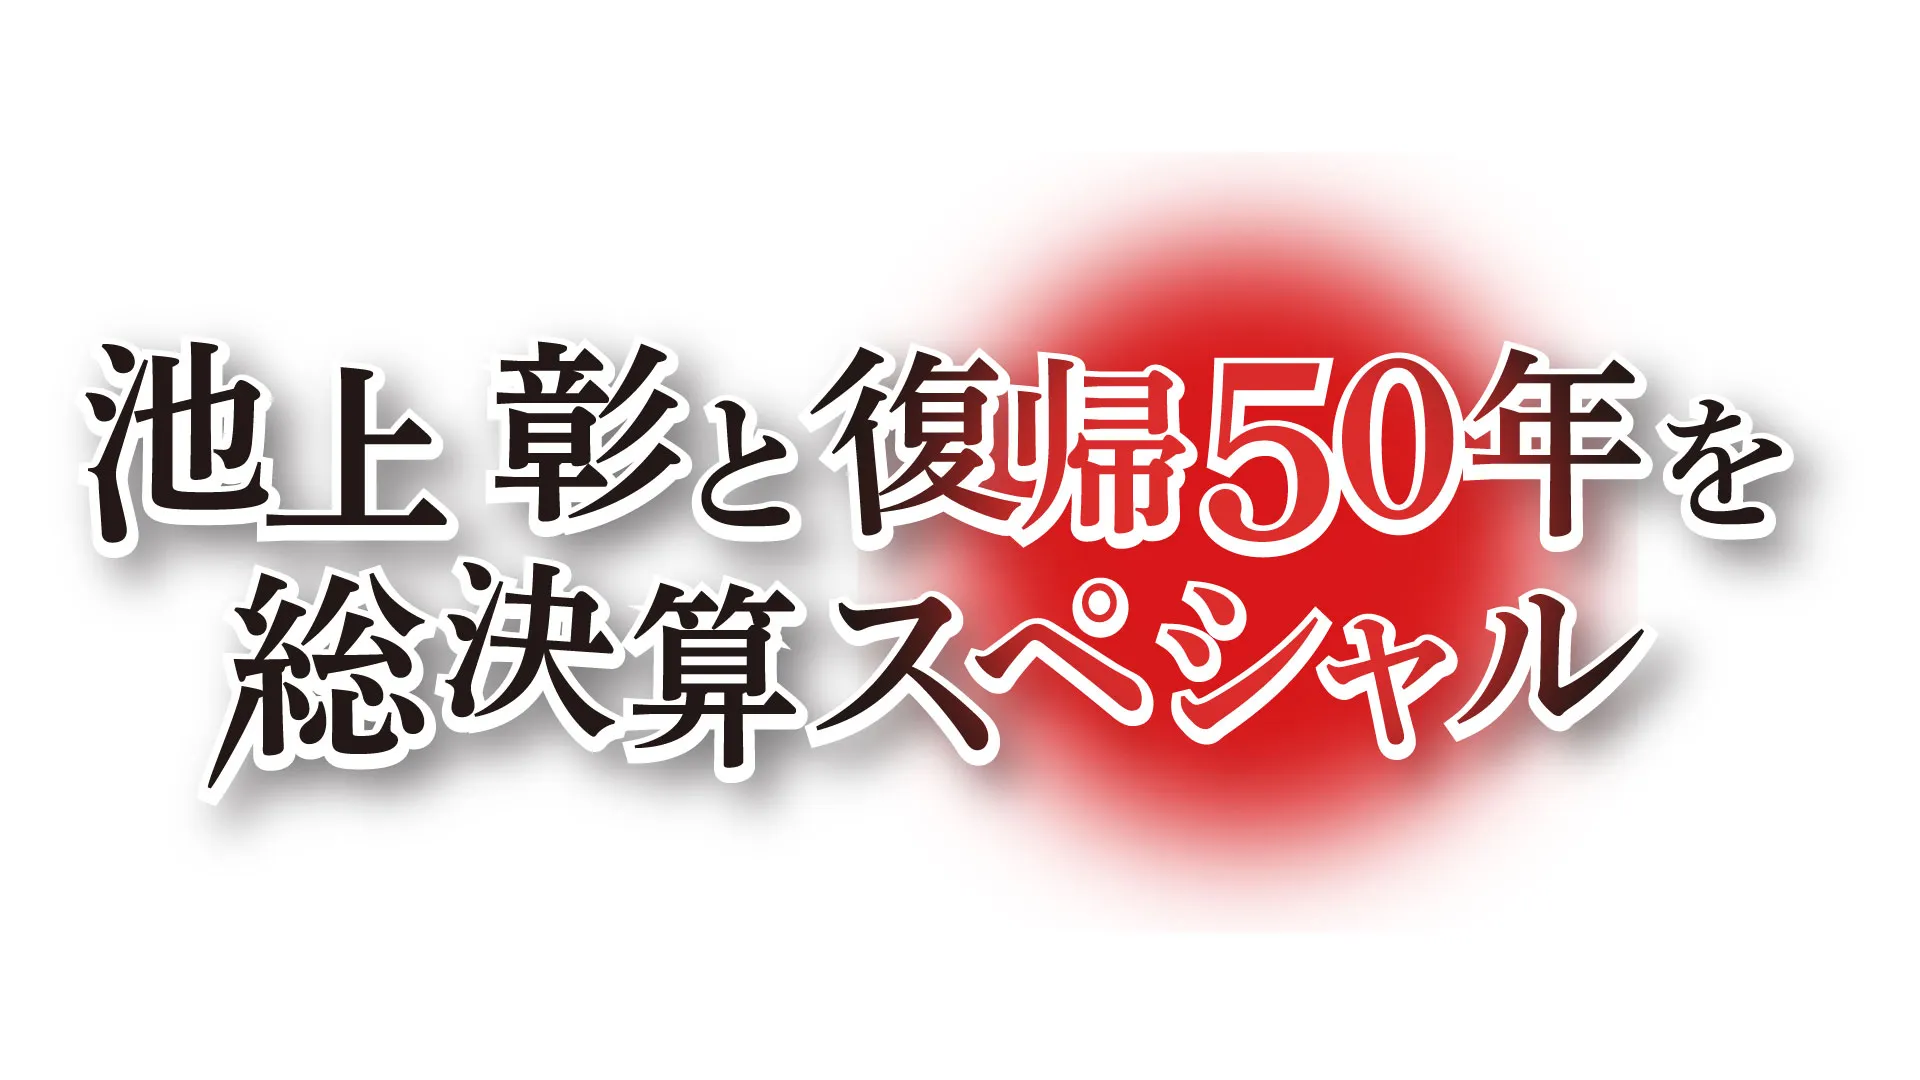 報道特別番組「池上彰と復帰50年を総決算スペシャル」のサムネイル画像